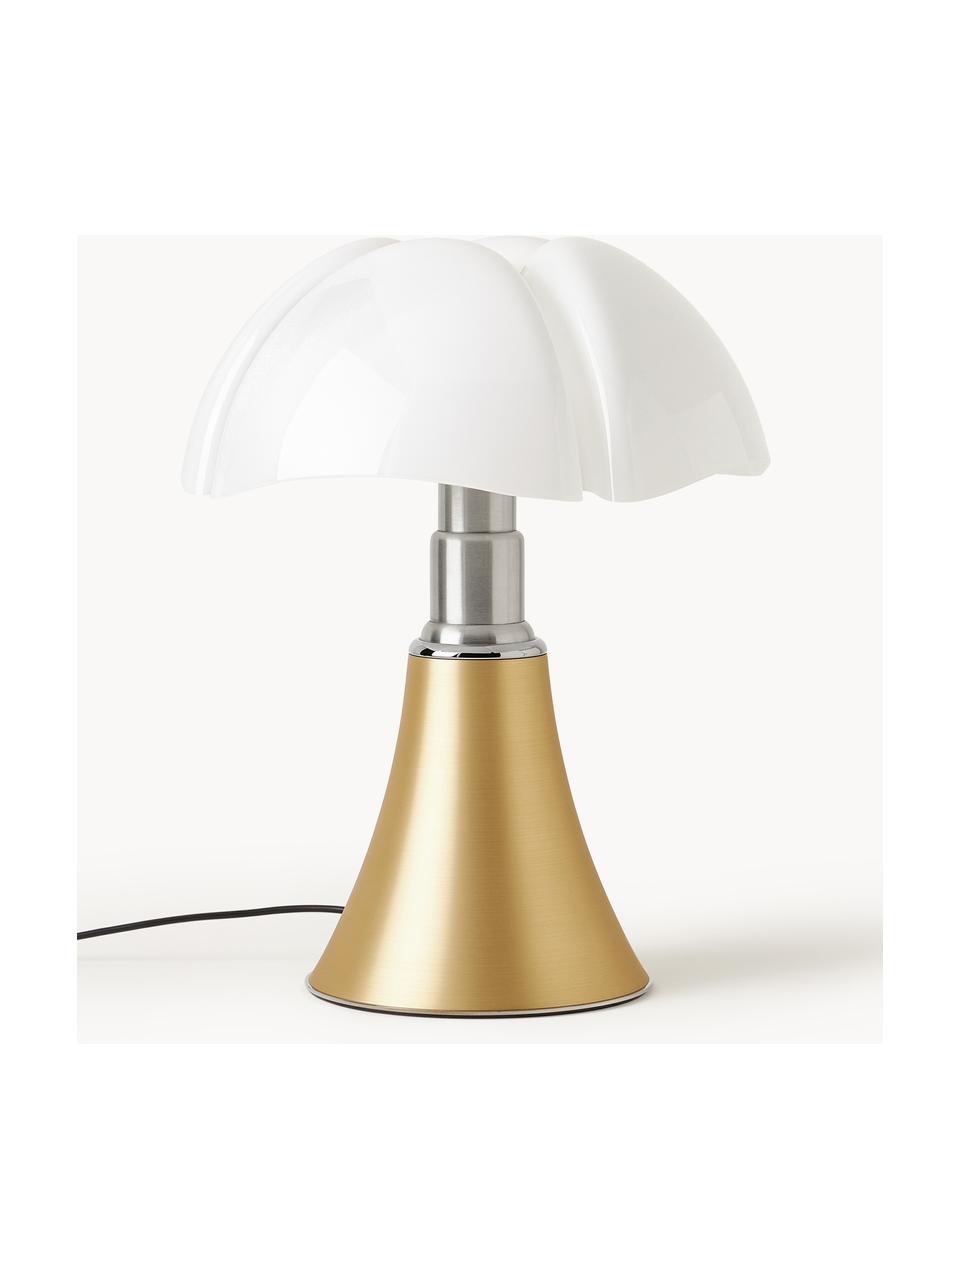 Grote dimbare LED tafellamp Pipistrello, in hoogte verstelbaar, Mat goudkleurig, Ø 40 x H 50-62 cm